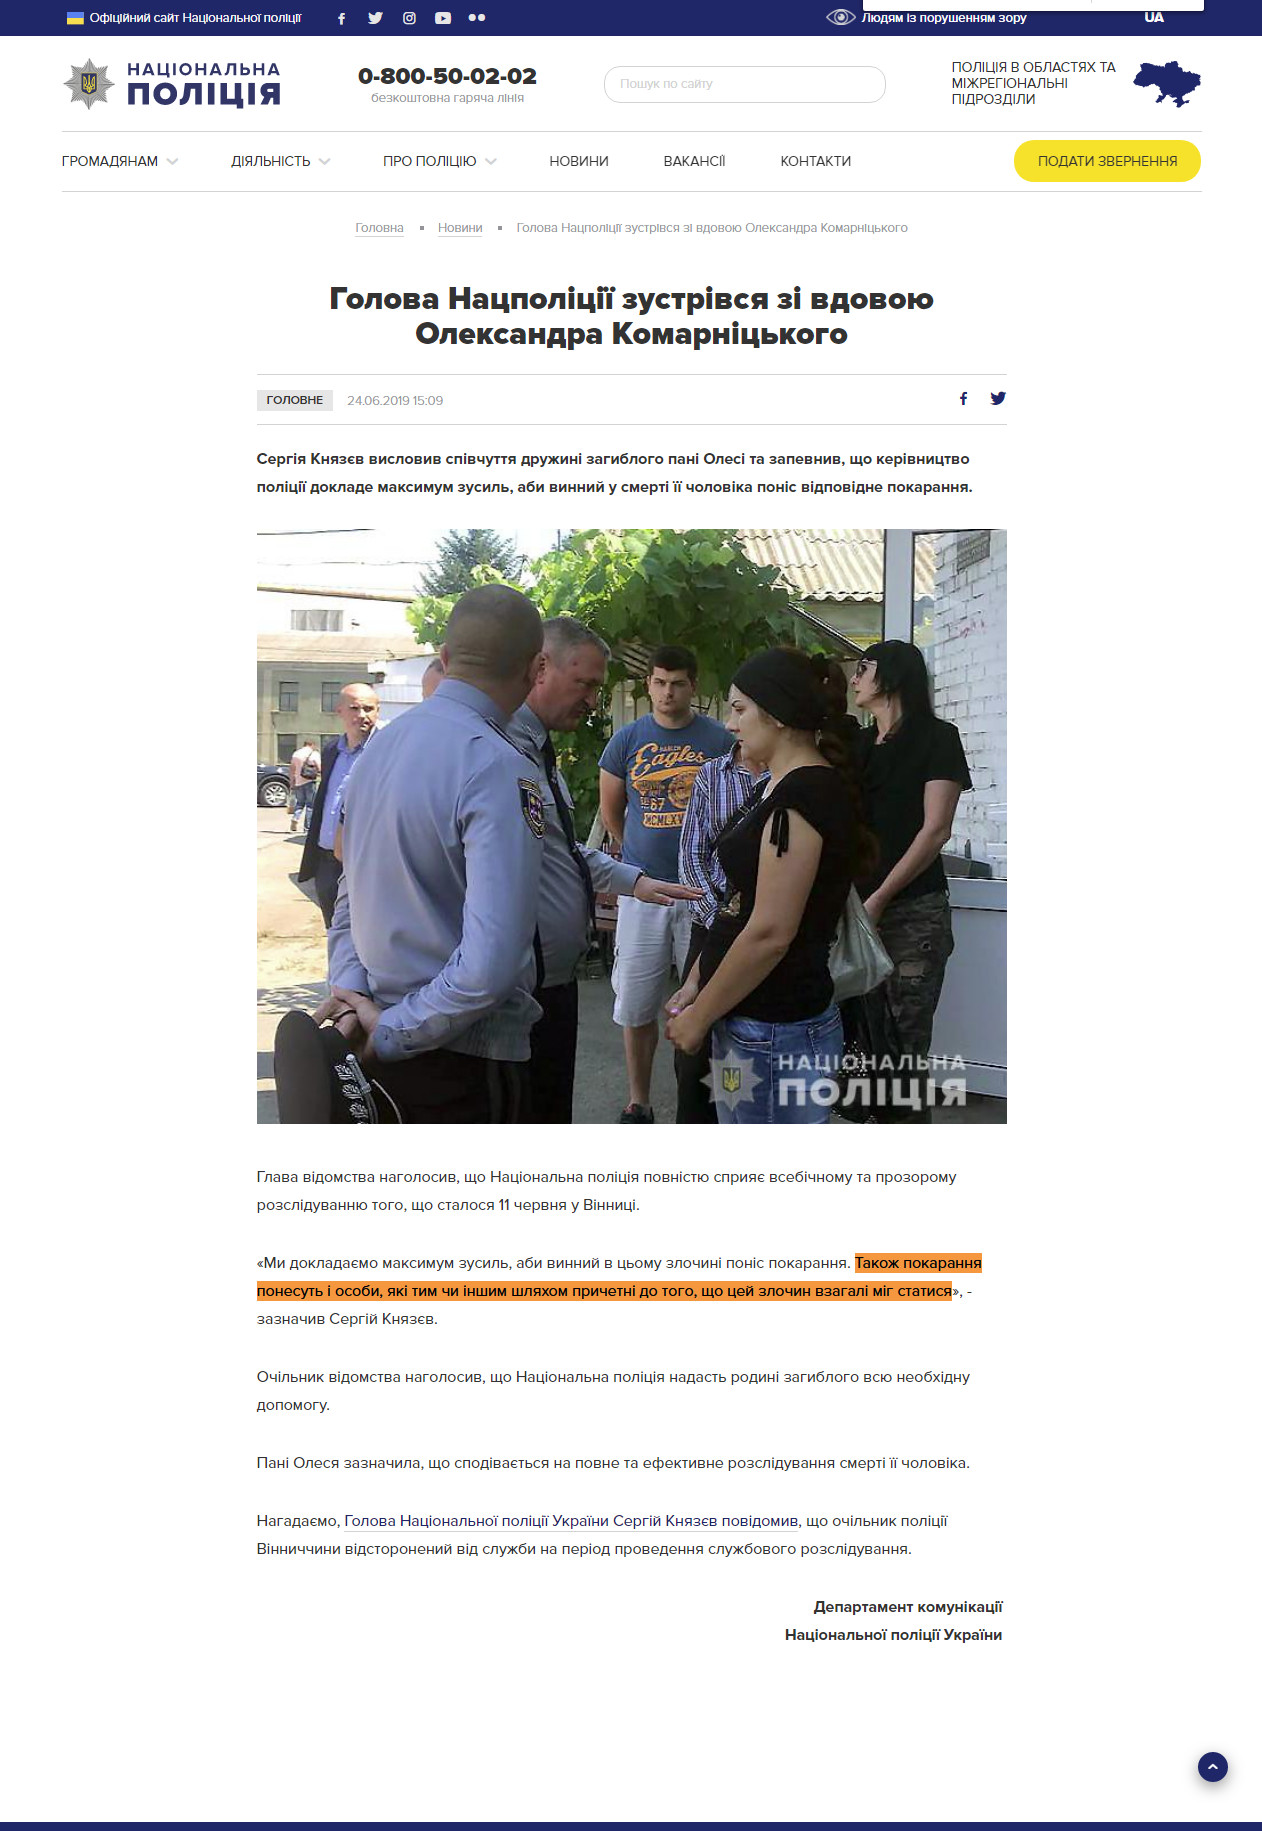 https://www.npu.gov.ua/news/golovne/golova-naczpolicziji-zustrivsya-zi-vdovoyu-oleksandra-komarniczkogo/